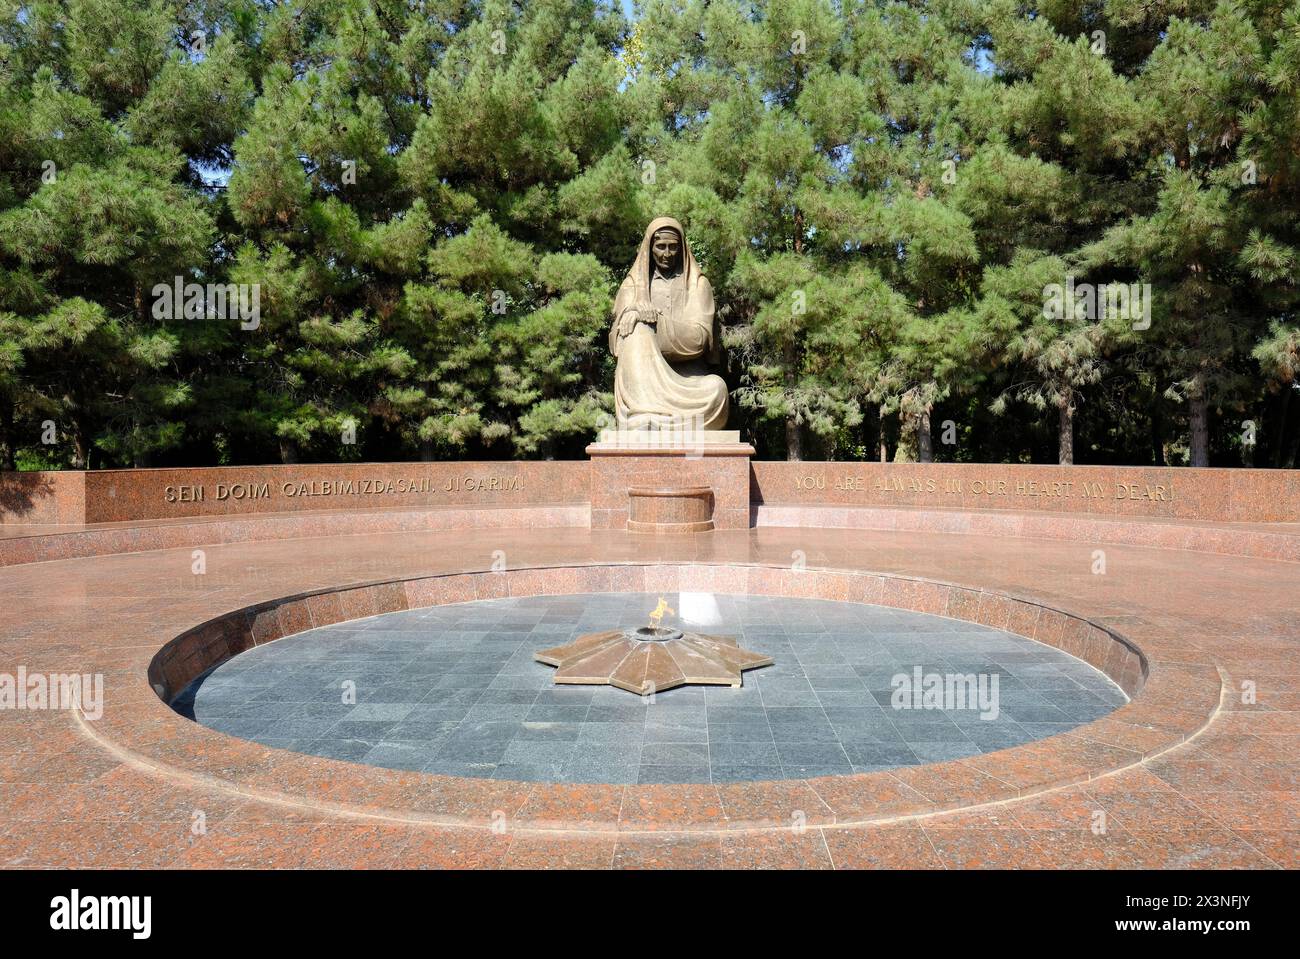 Samarcanda Uzbekistan - monumento alla madre piangente un memoriale ai soldati caduti dall'Uzbekistan che morirono combattendo per l'Armata Rossa sovietica durante la seconda guerra mondiale Foto Stock